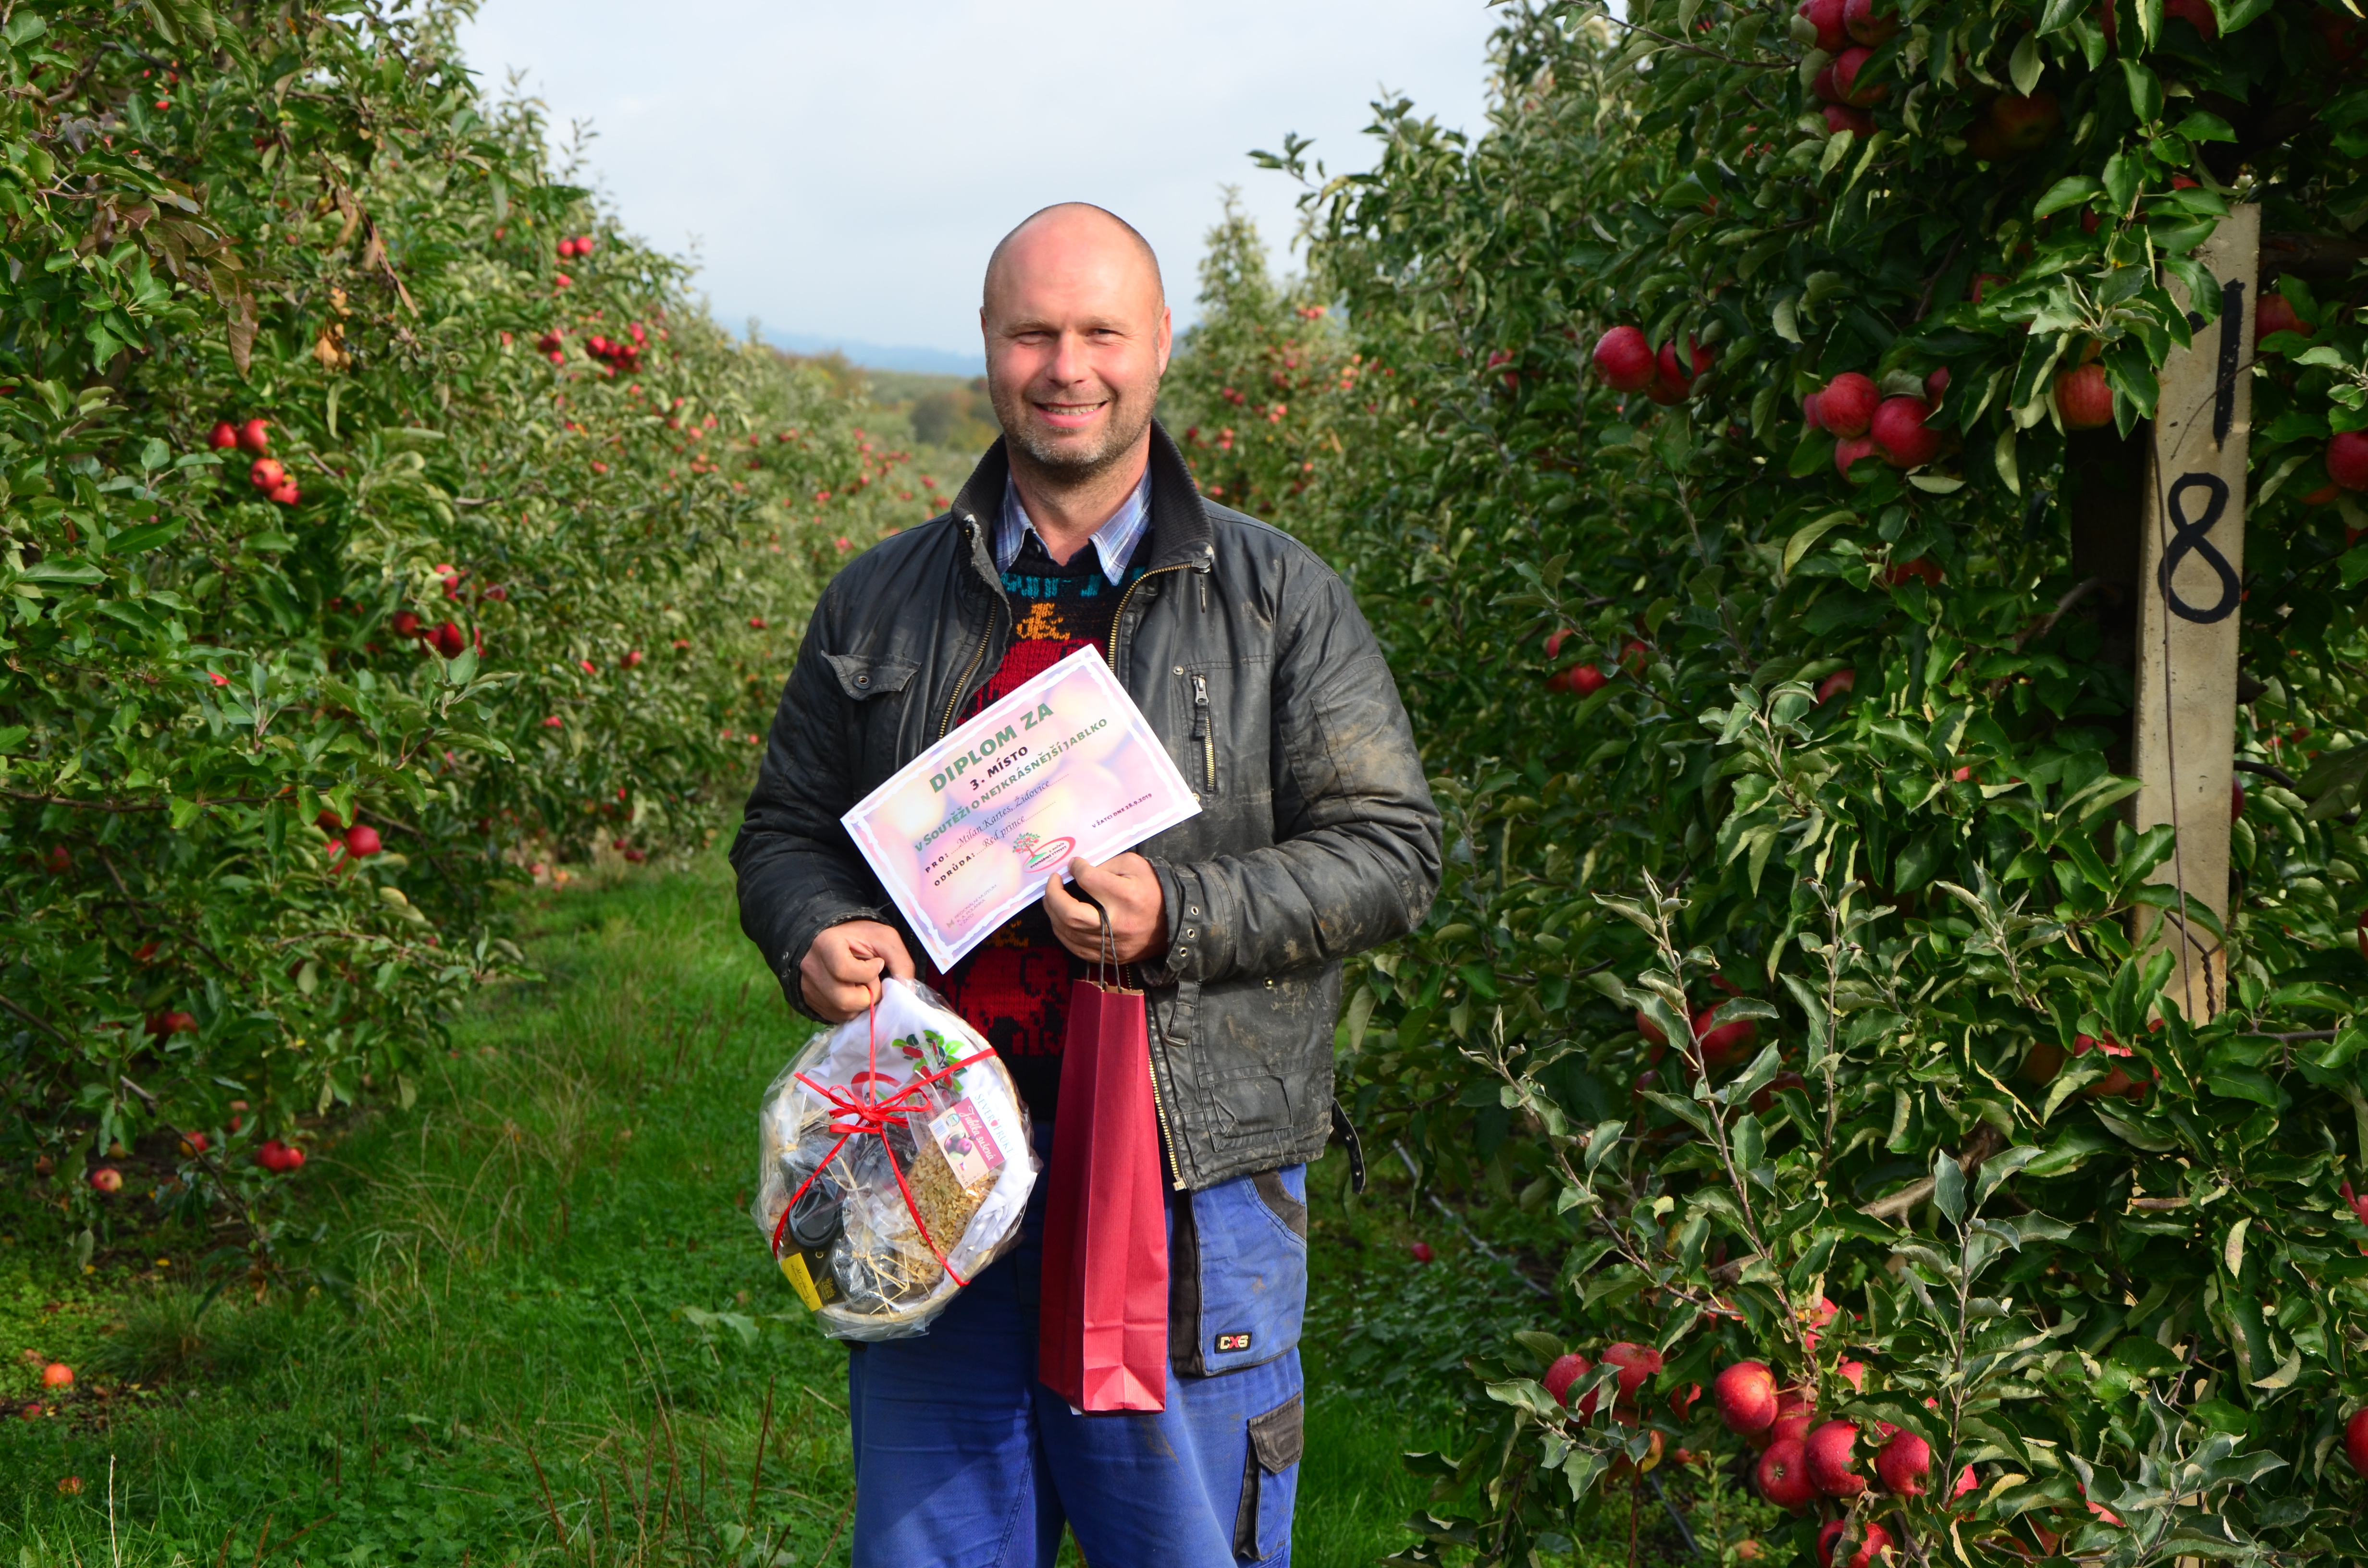 3 místo v soutěži o nejkrásnější jablko za odrůdu Reg prince získal Milan Kartes ze Židovic